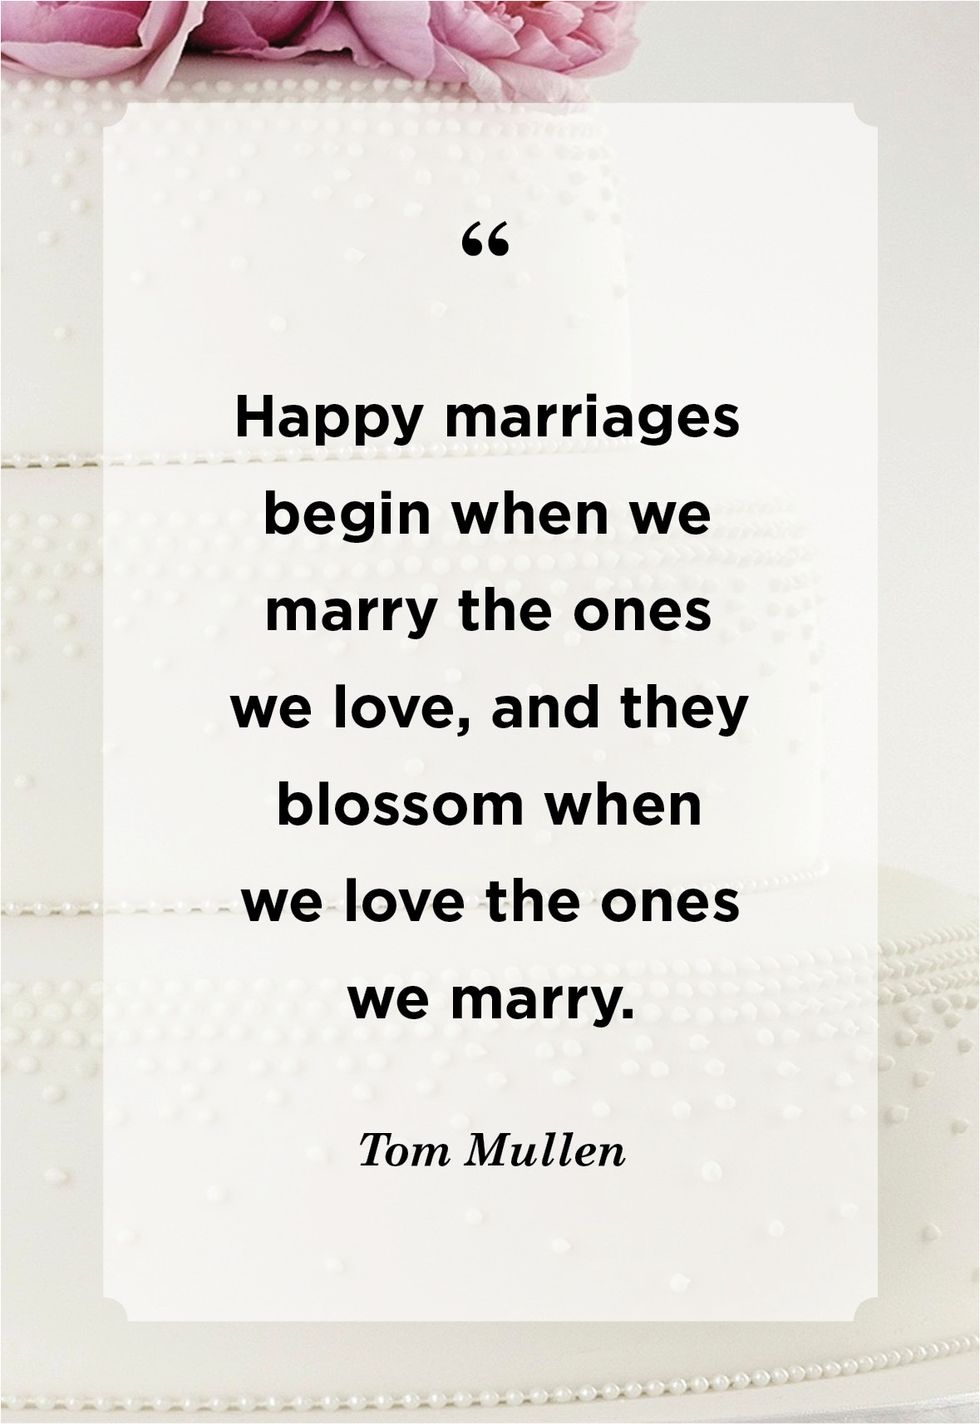 tom mullen wedding quote